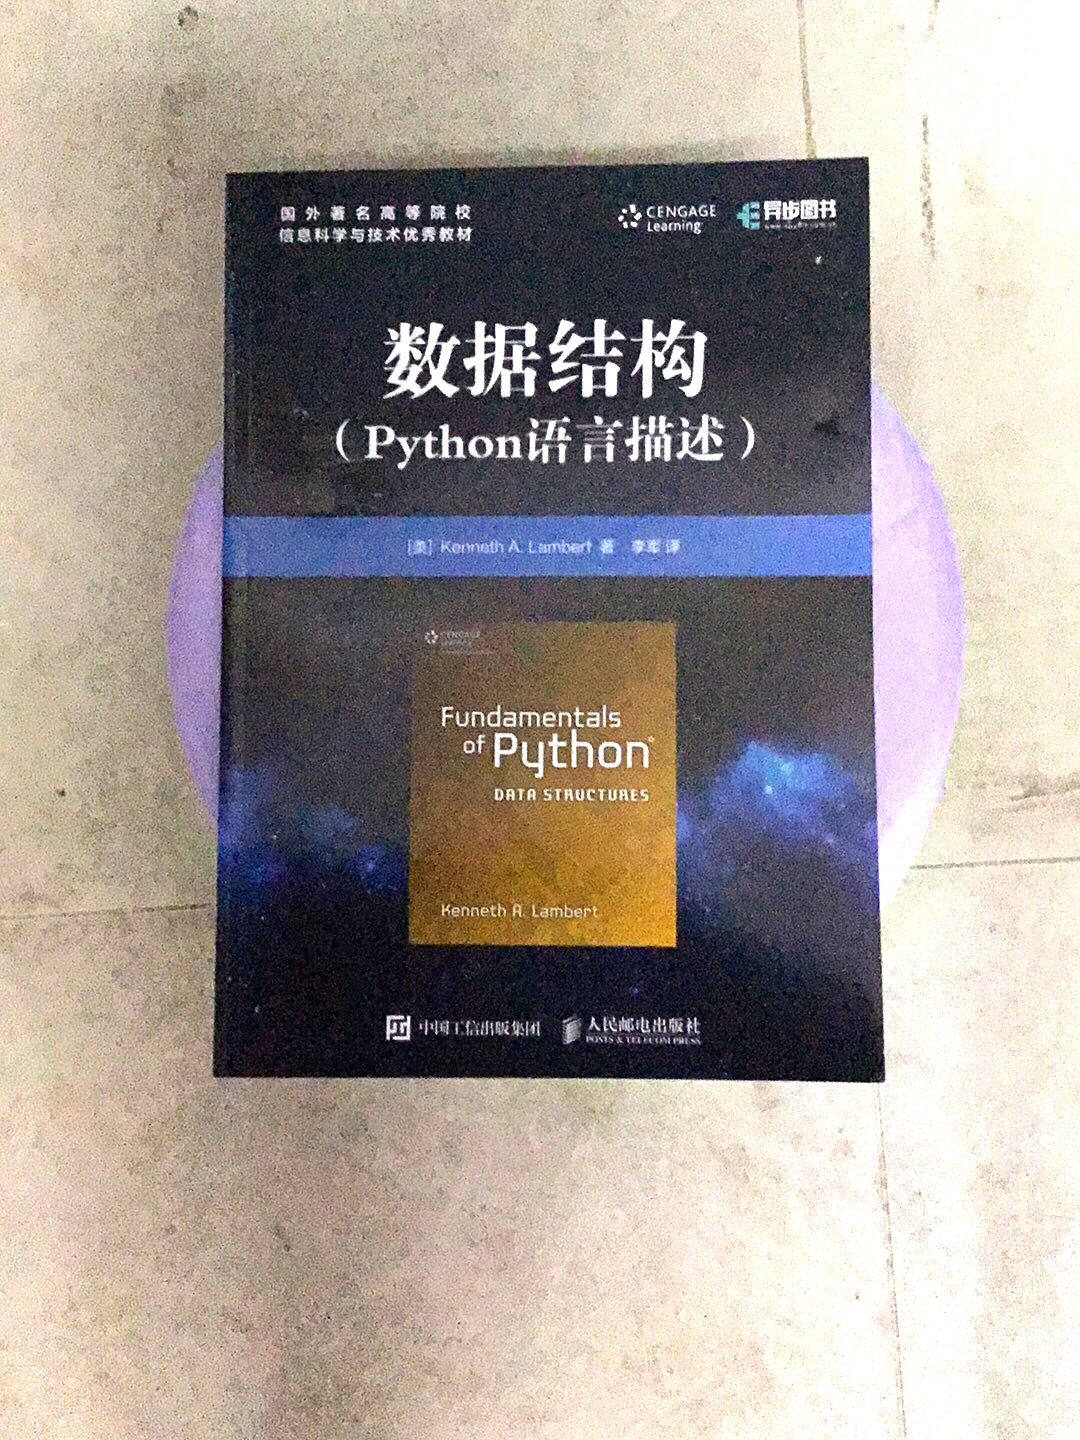 这本书不仅适合高等院校计算机专业师生阅读，也适合对Python感兴趣的读者和程序员阅读。